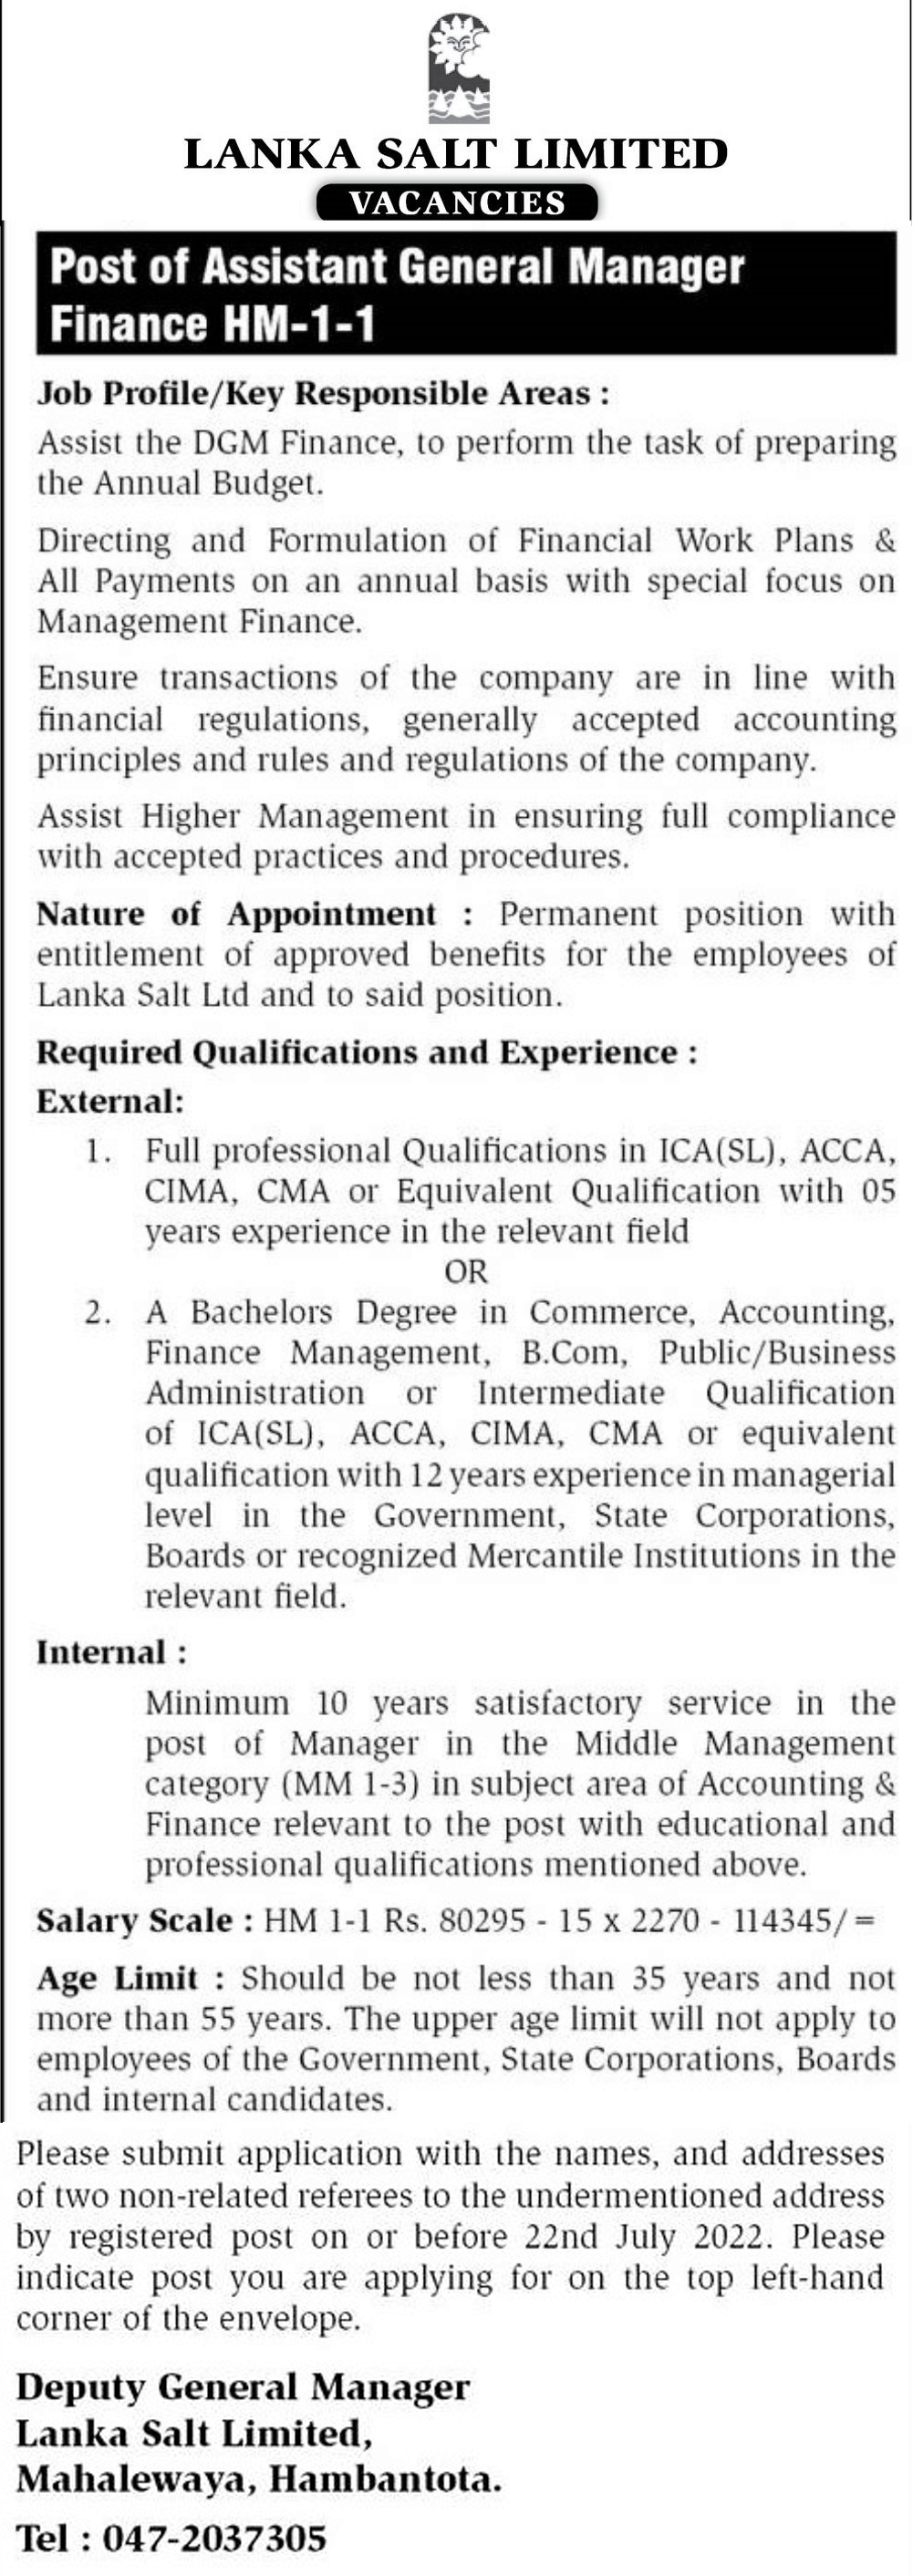 Assistant General Manager (Finance) Job Vacancy - Lanka Salt Ltd Jobs Vacancies